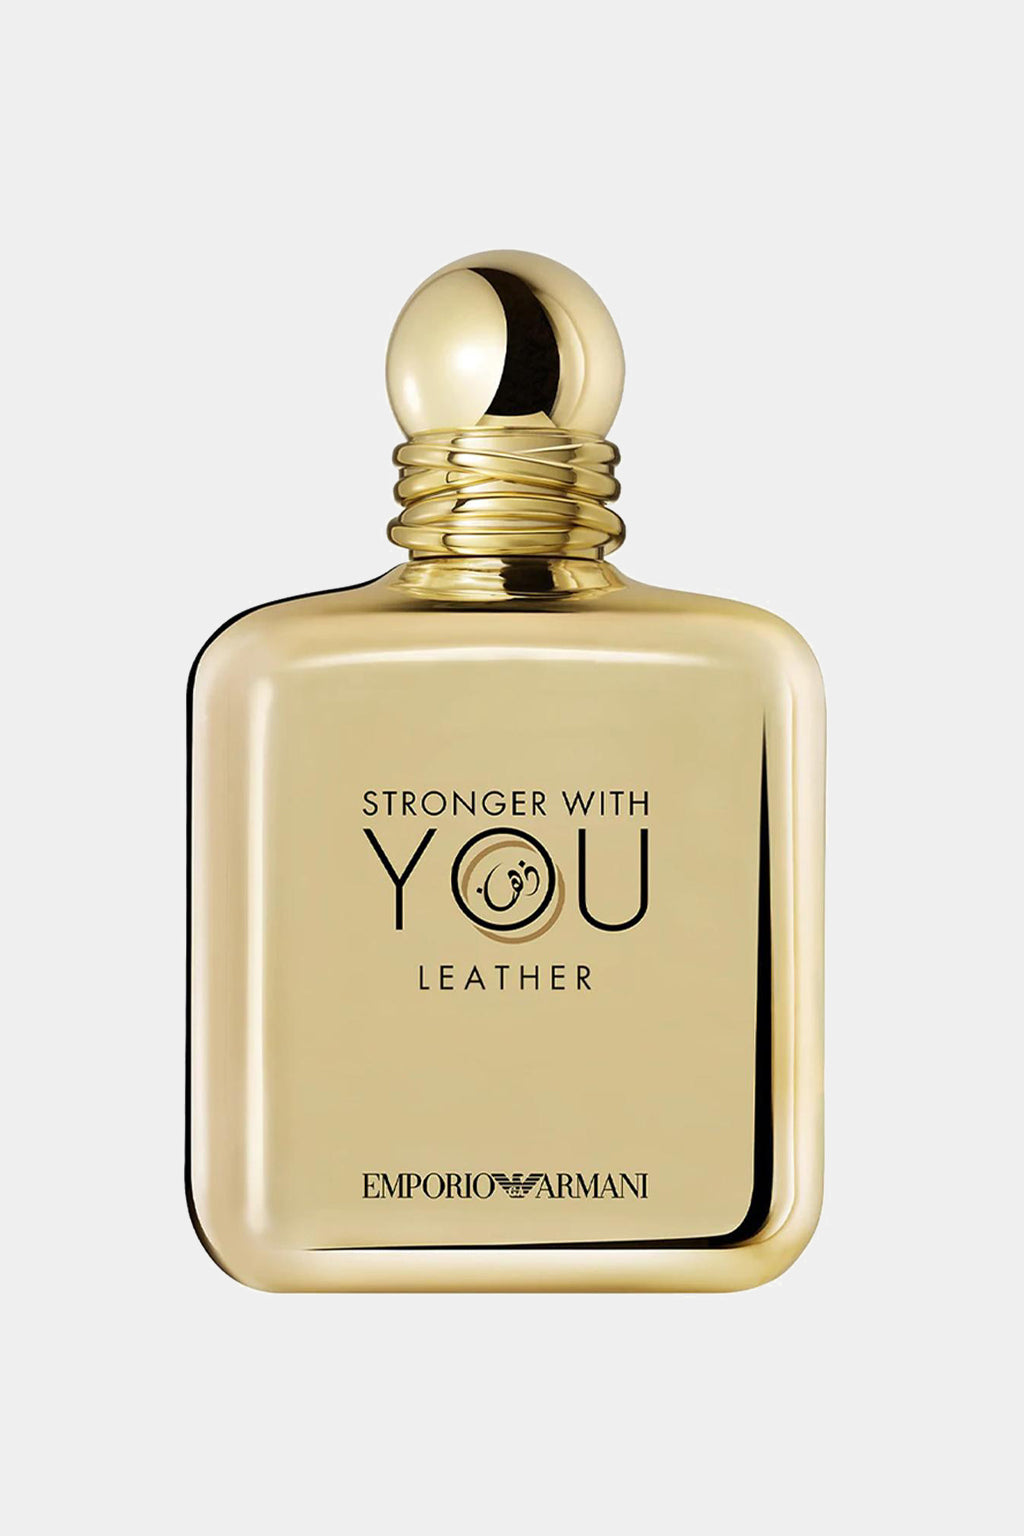 Emporio Armani - Stronger With You Leather Pour Homme For Men Eau De Parfum 100ML